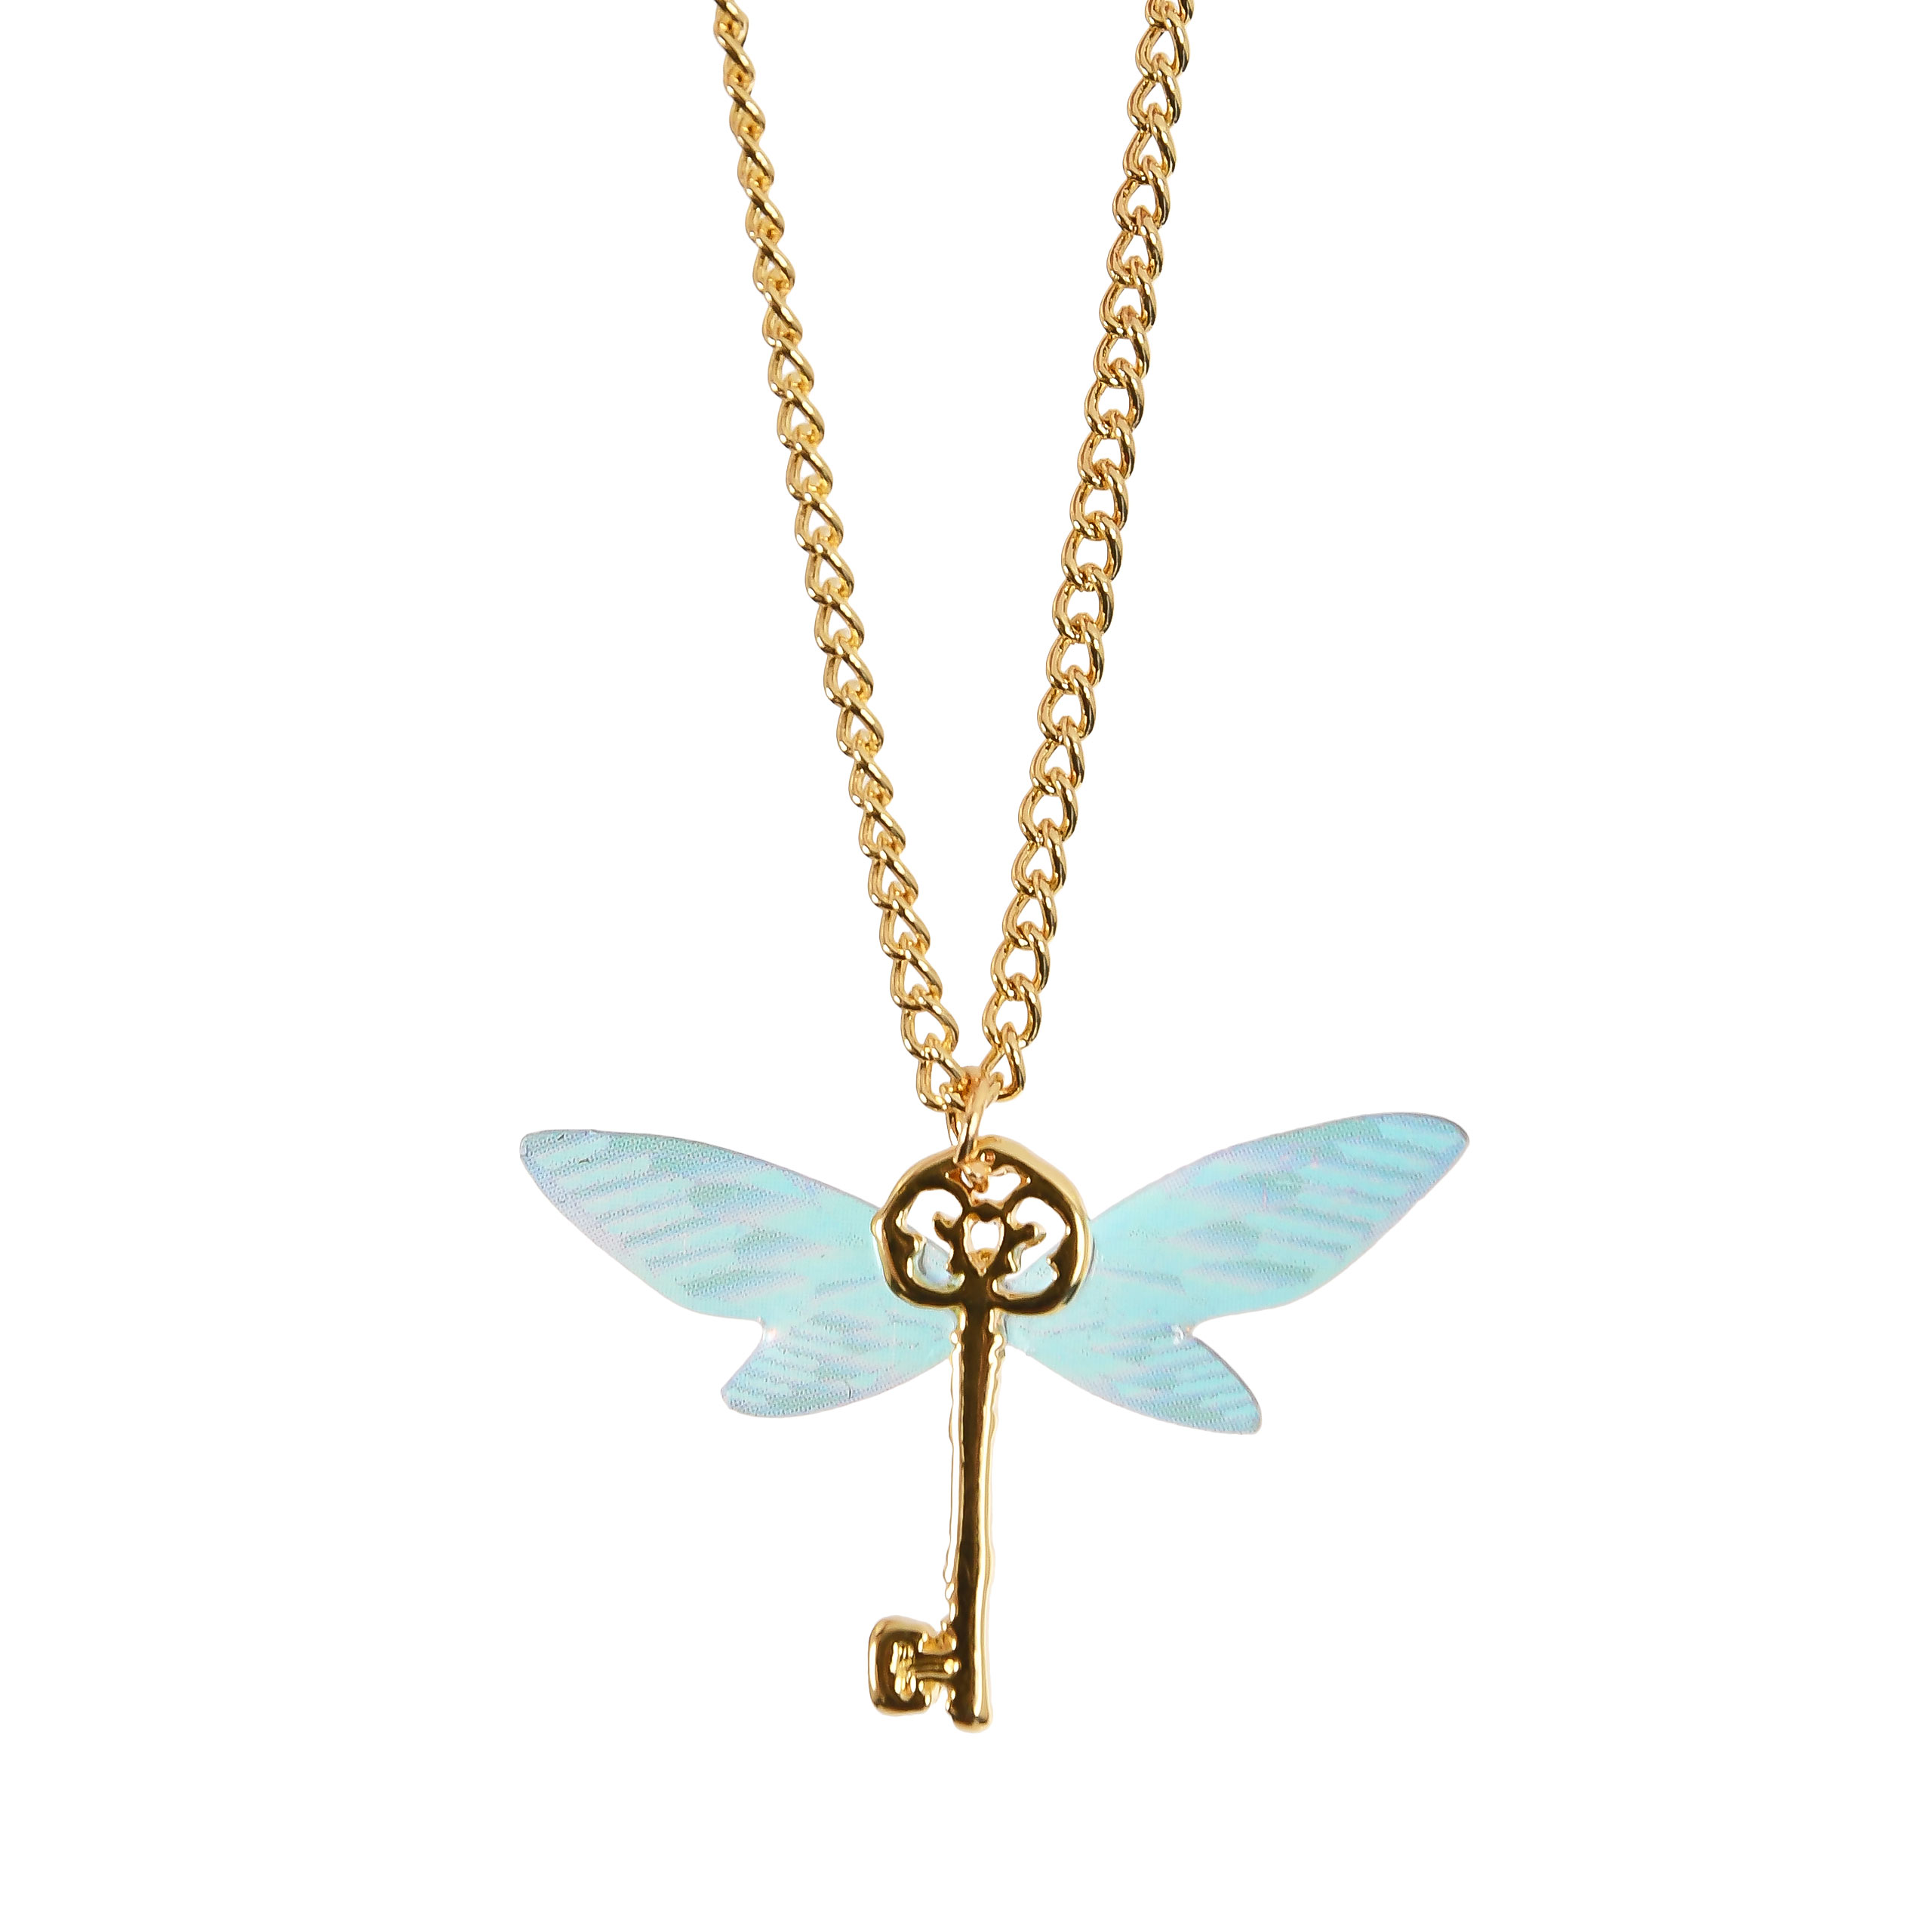 Harry Potter - Flying Key Necklace